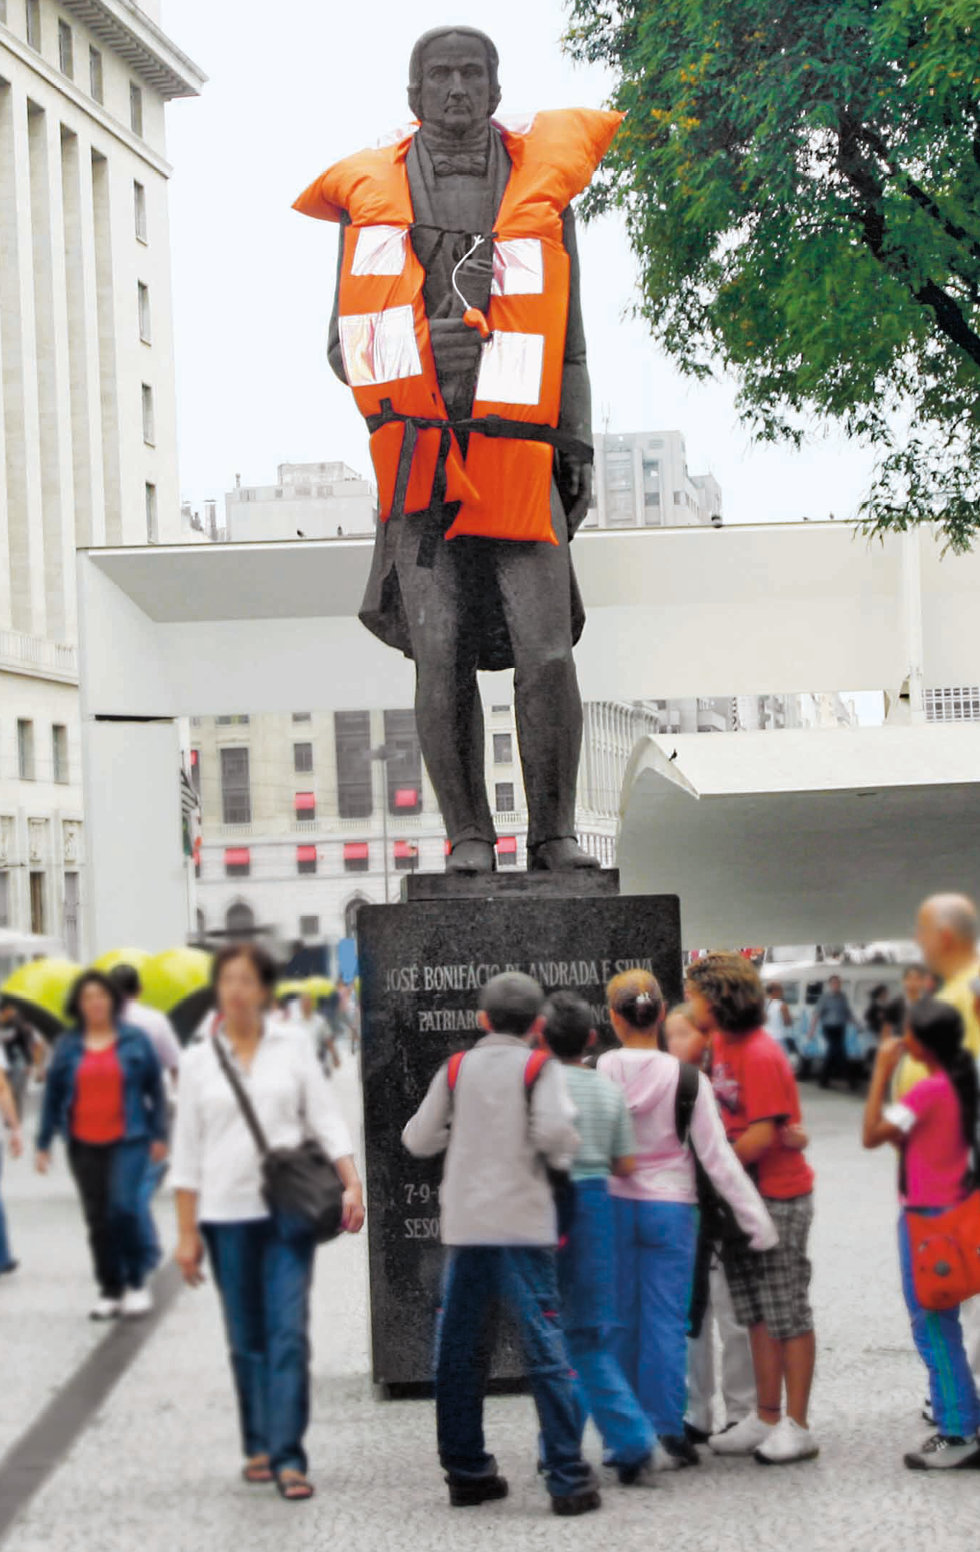 Fotografia. Estátua de homem vestido com um colete salva-vidas laranja real, posicionada ao centro de uma praça e sobre um pedestal com texto. Algumas pessoas estão bem próximas à estátua, observando o texto do pedestal. À esquerda e ao fundo, construções e pessoas caminhando.